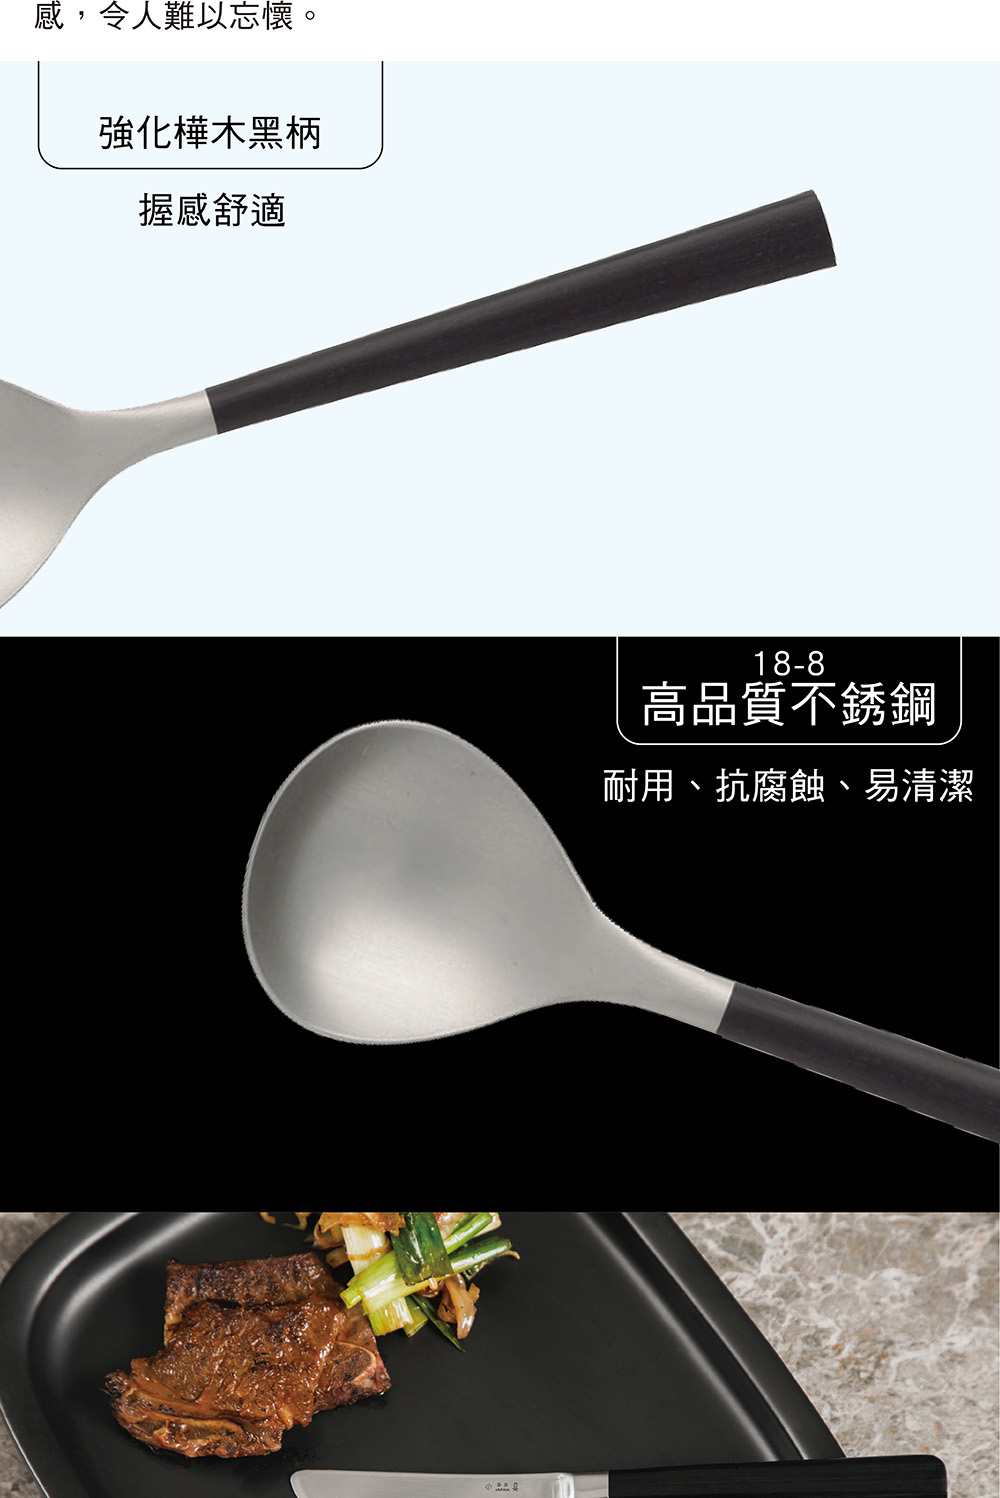 柳宗理 日本製樺木湯匙(18-8高品質不鏽鋼及樺木打造的質感